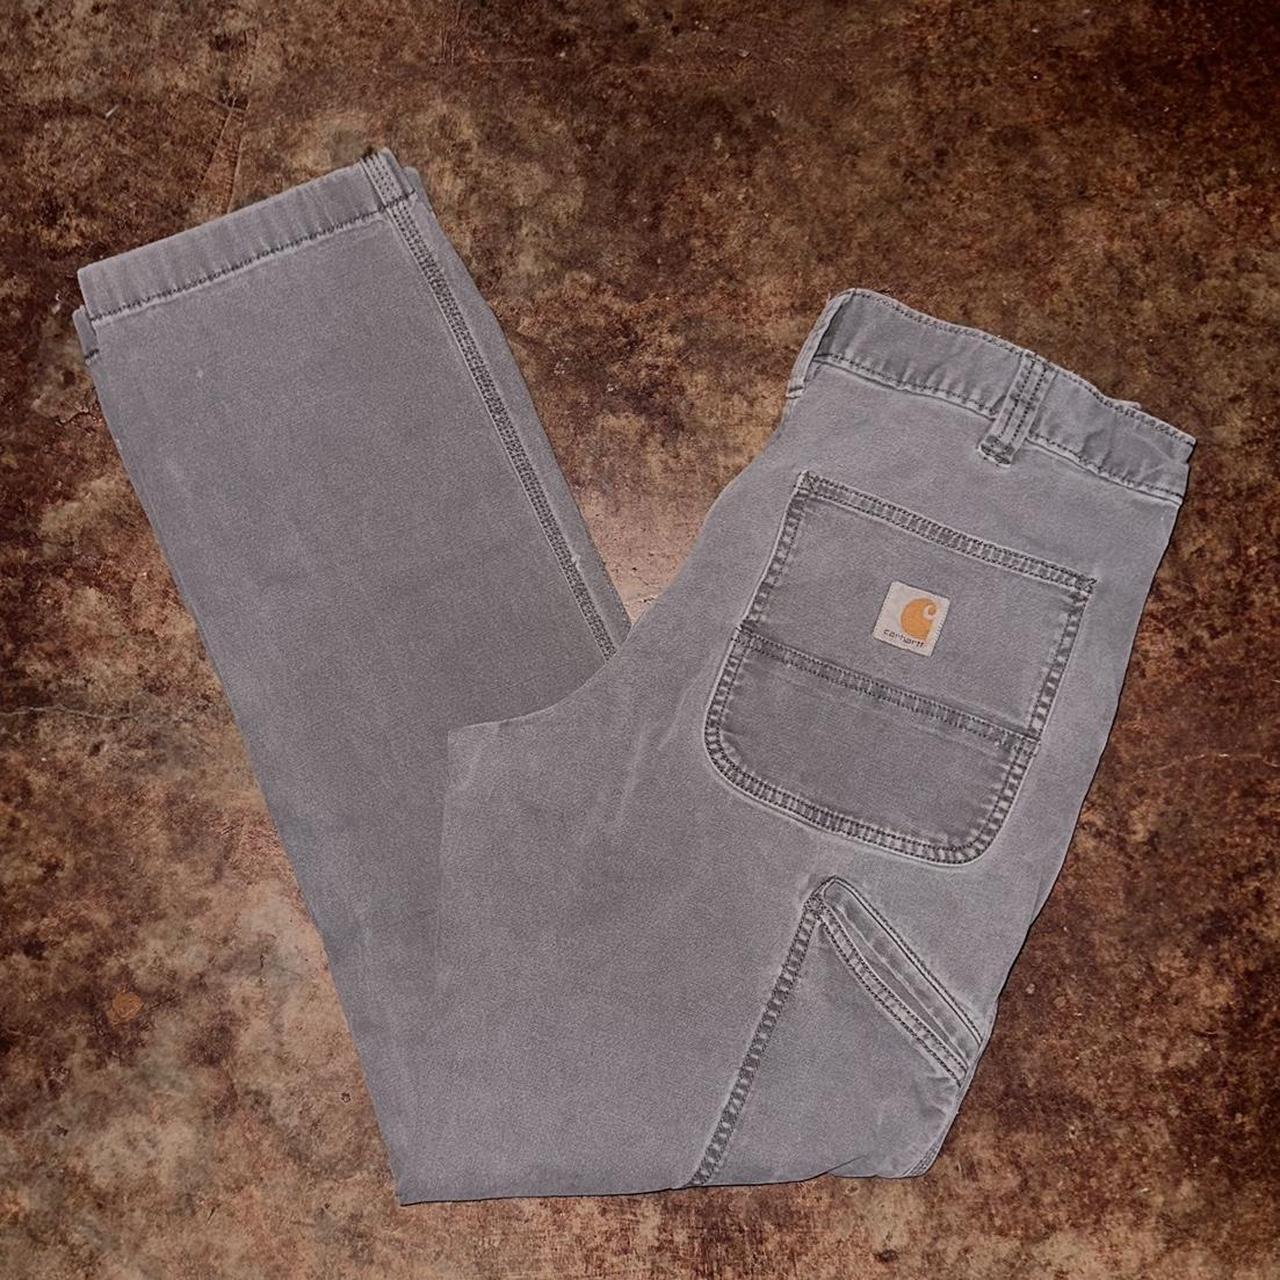 Carhartt Grey Pants Side Pockets Wear/Flaws Shown... - Depop